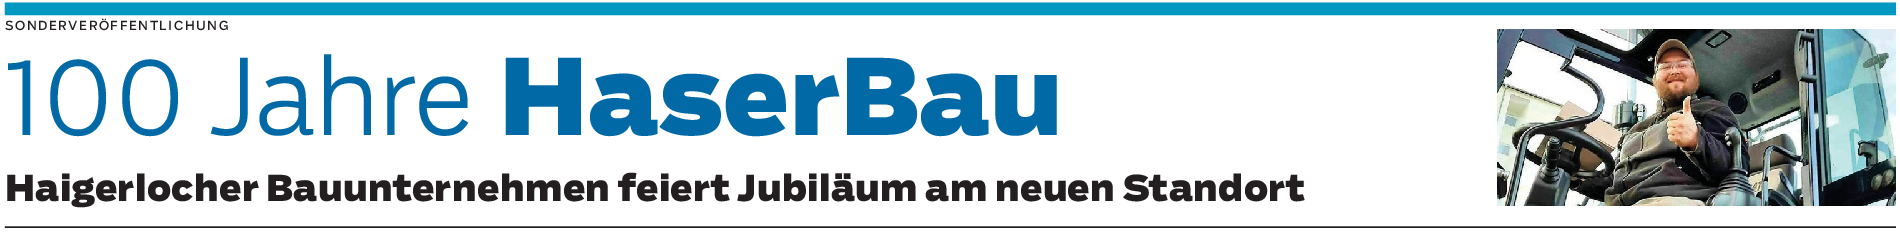 100 Jahre HaserBau: Neuer Firmenstandort zum Jubiläum